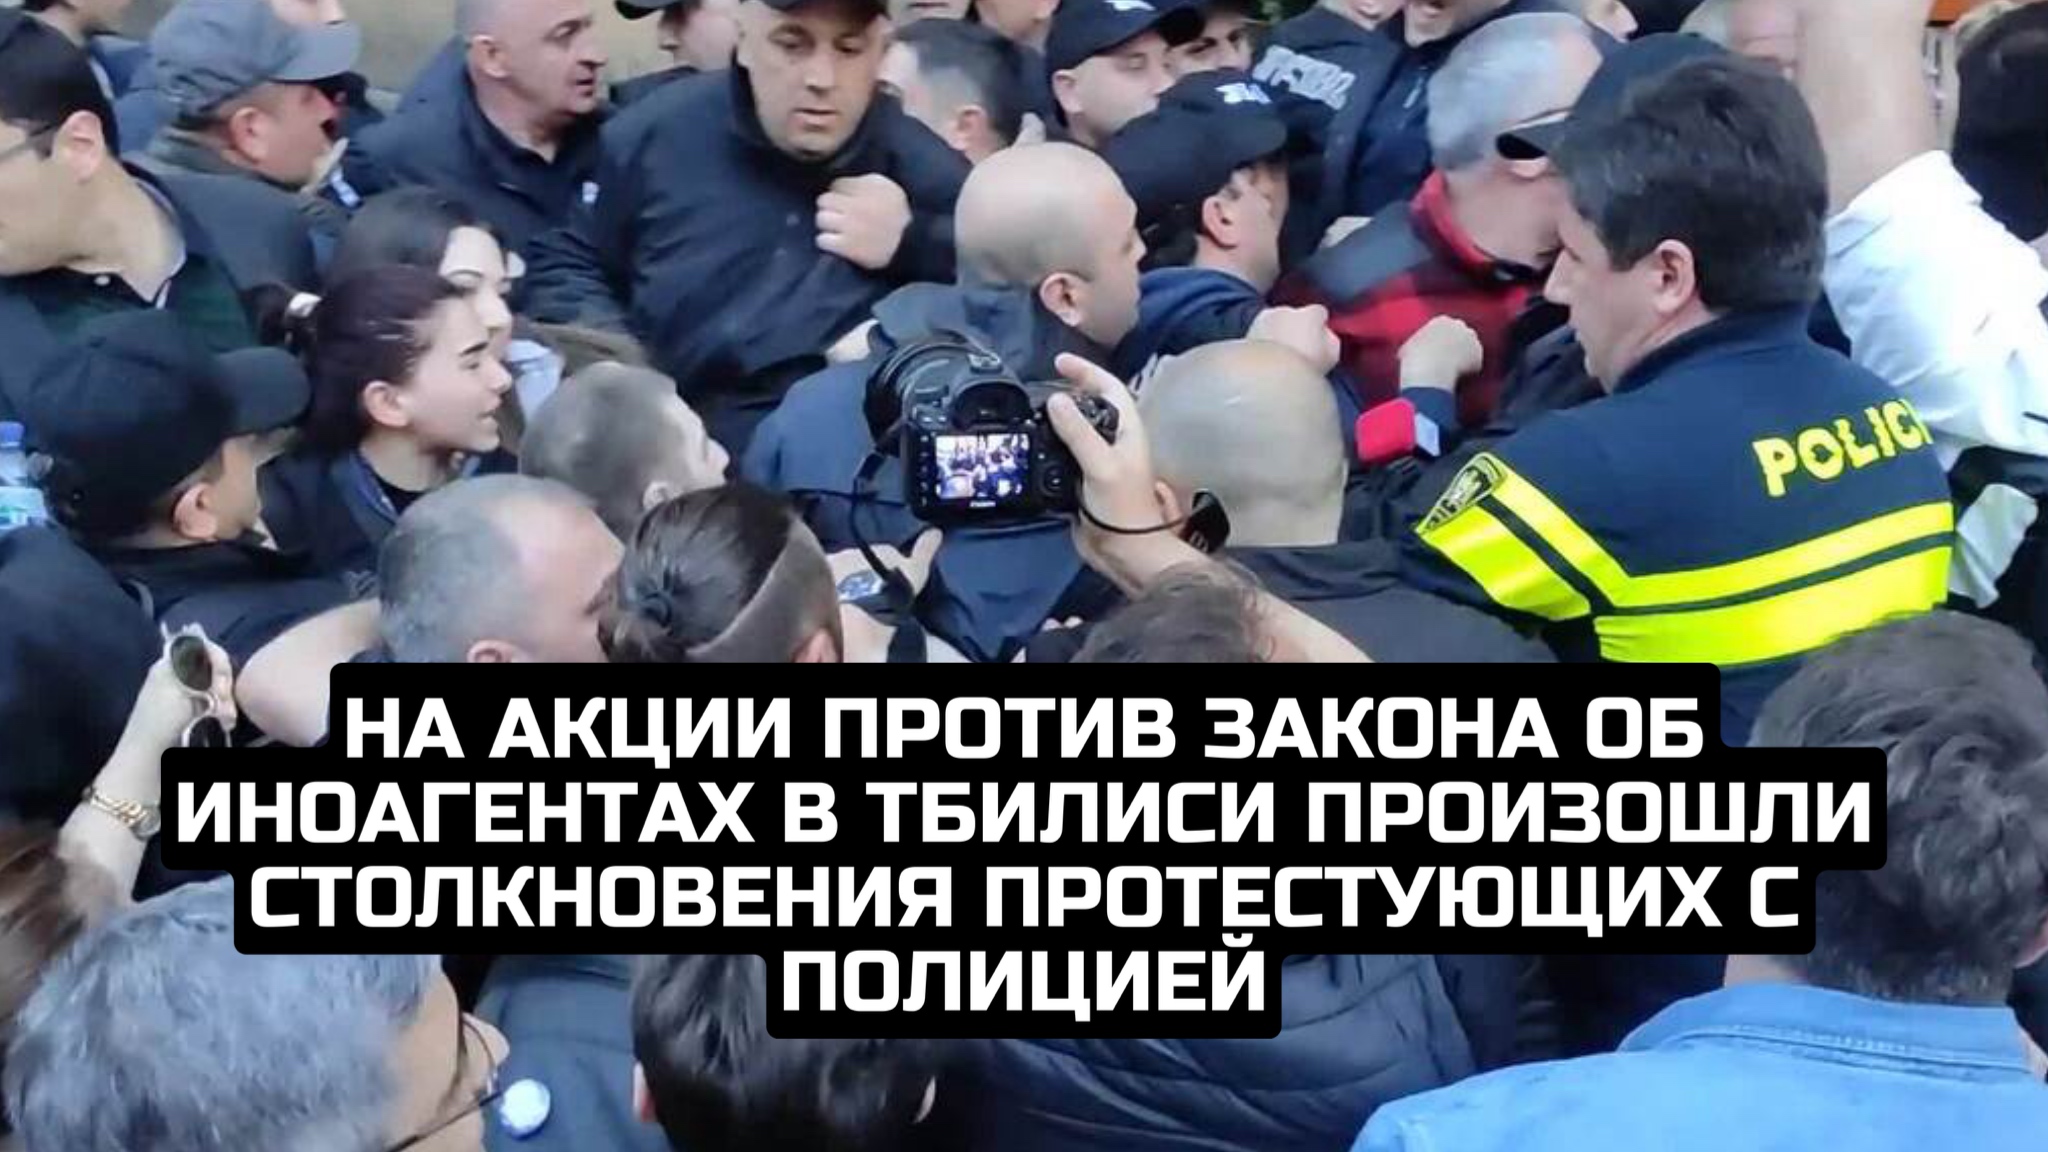 На акции против закона об иноагентах в Тбилиси произошли столкновения протестующих с полицией